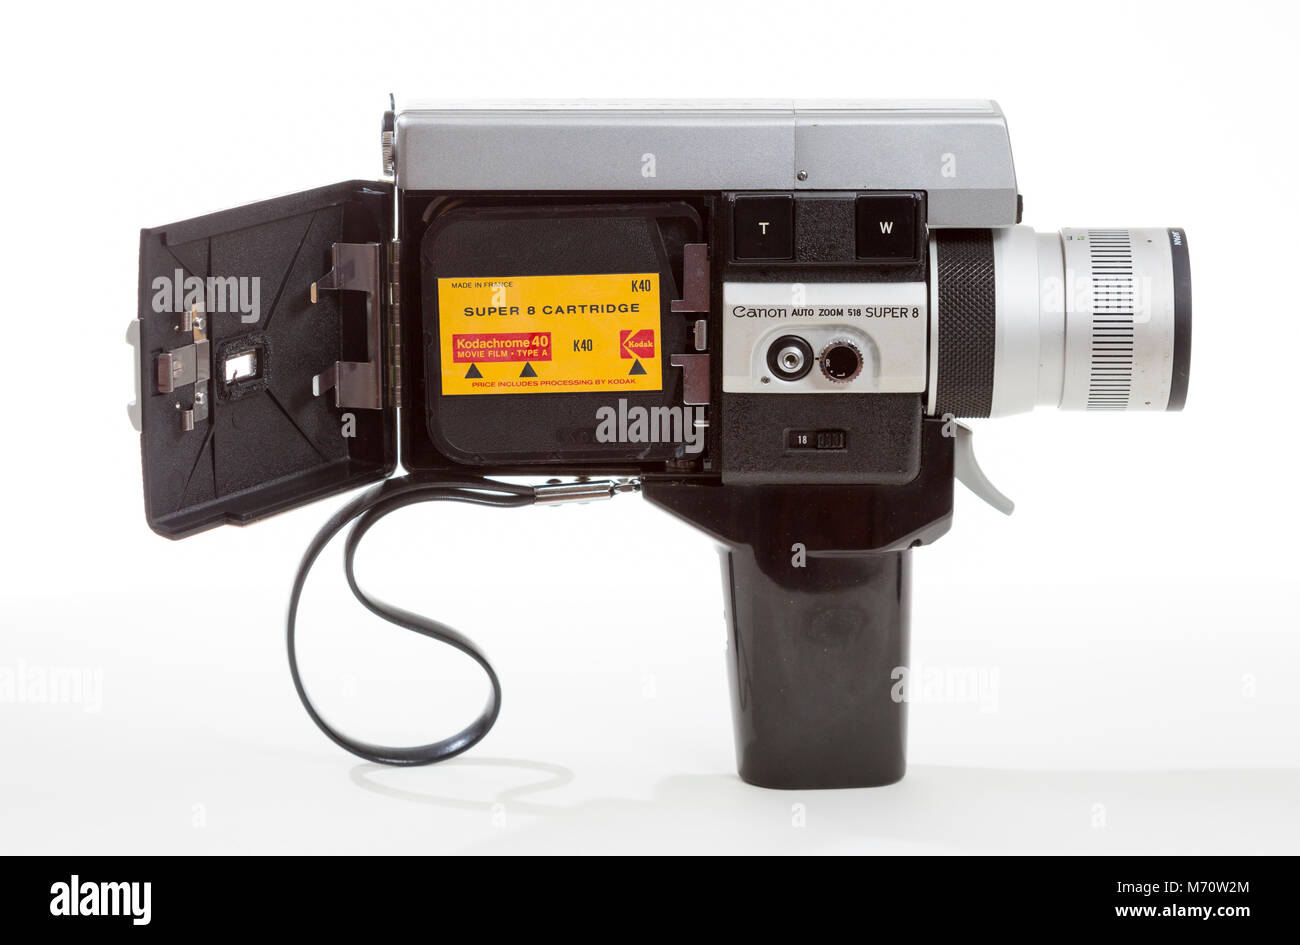 Canon super 8mm cine film camera with a super 8 Kodachrome film cartridge. Stock Photo